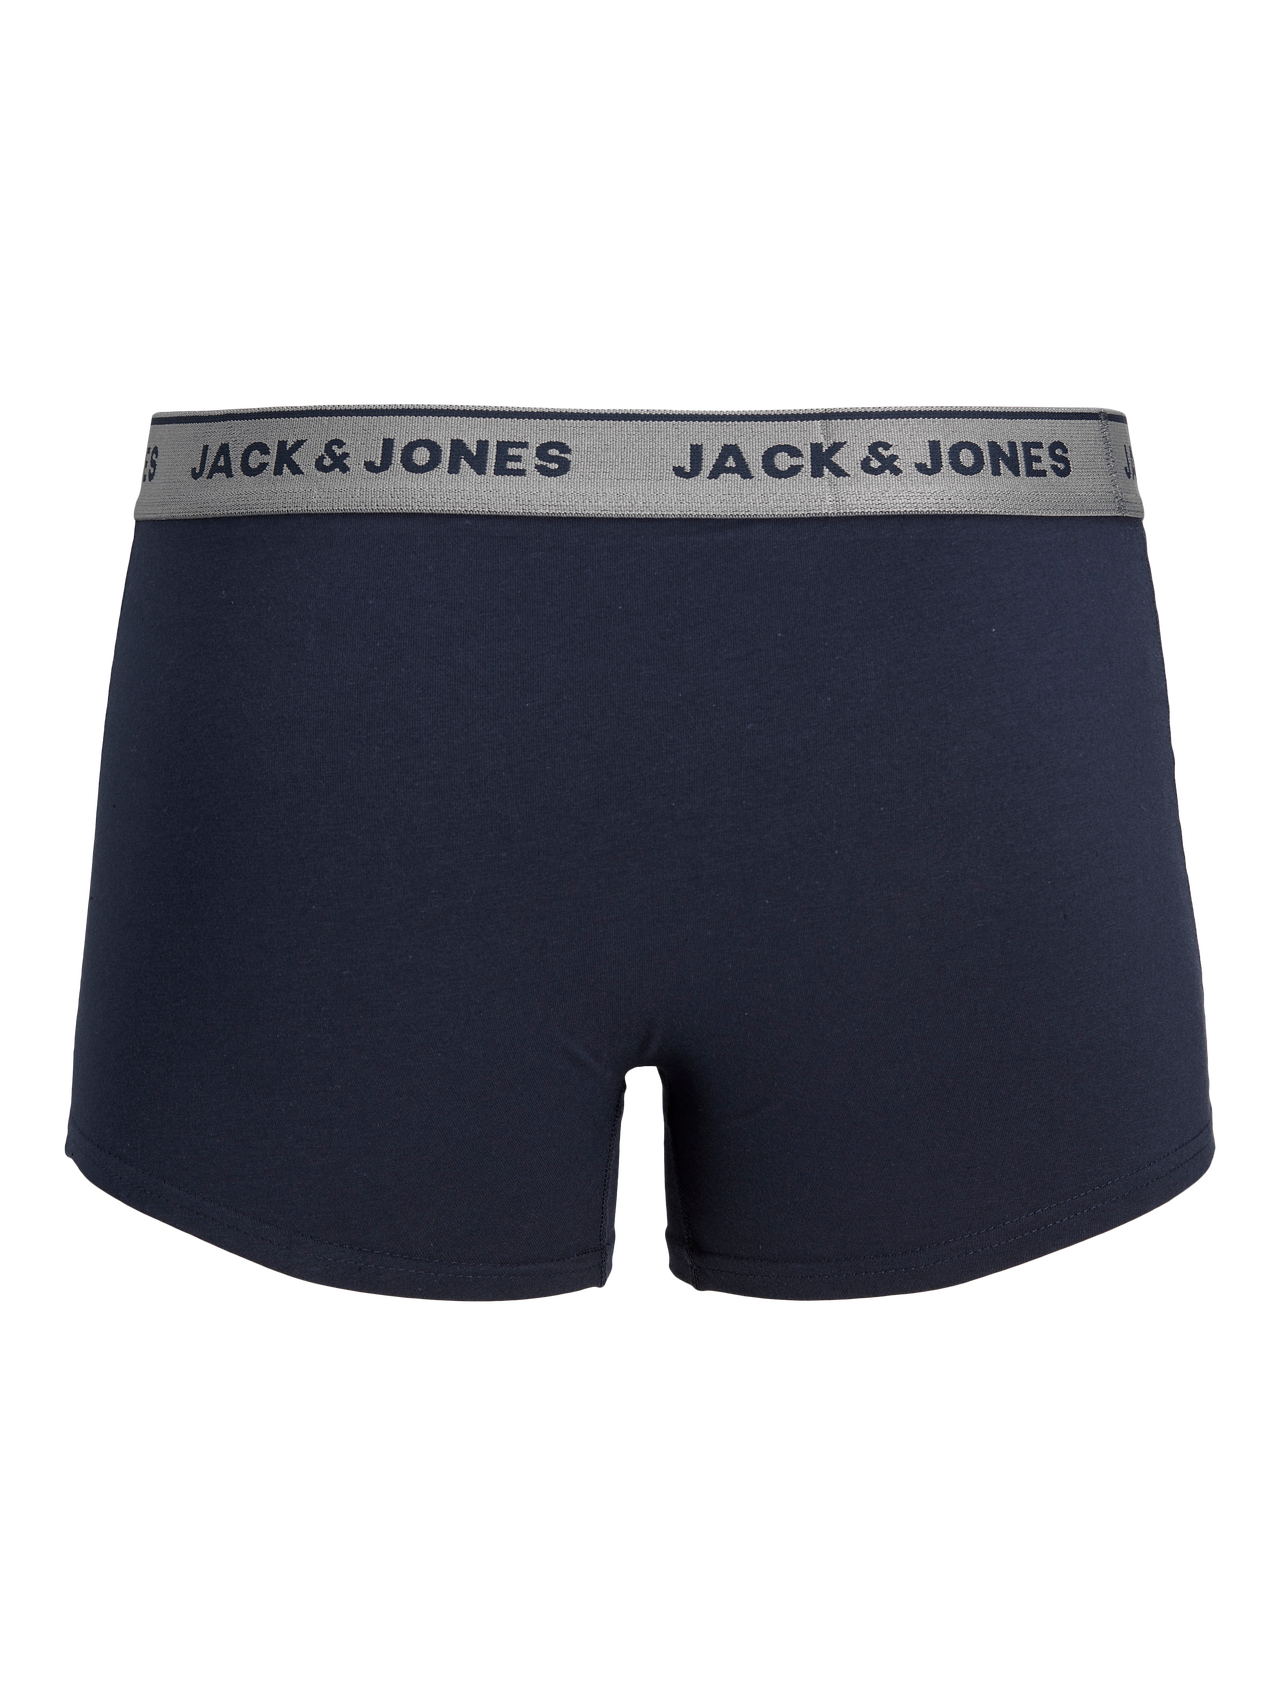 Jack & Jones 2-pakuotės Trumpikės -Navy Blazer - 12138239